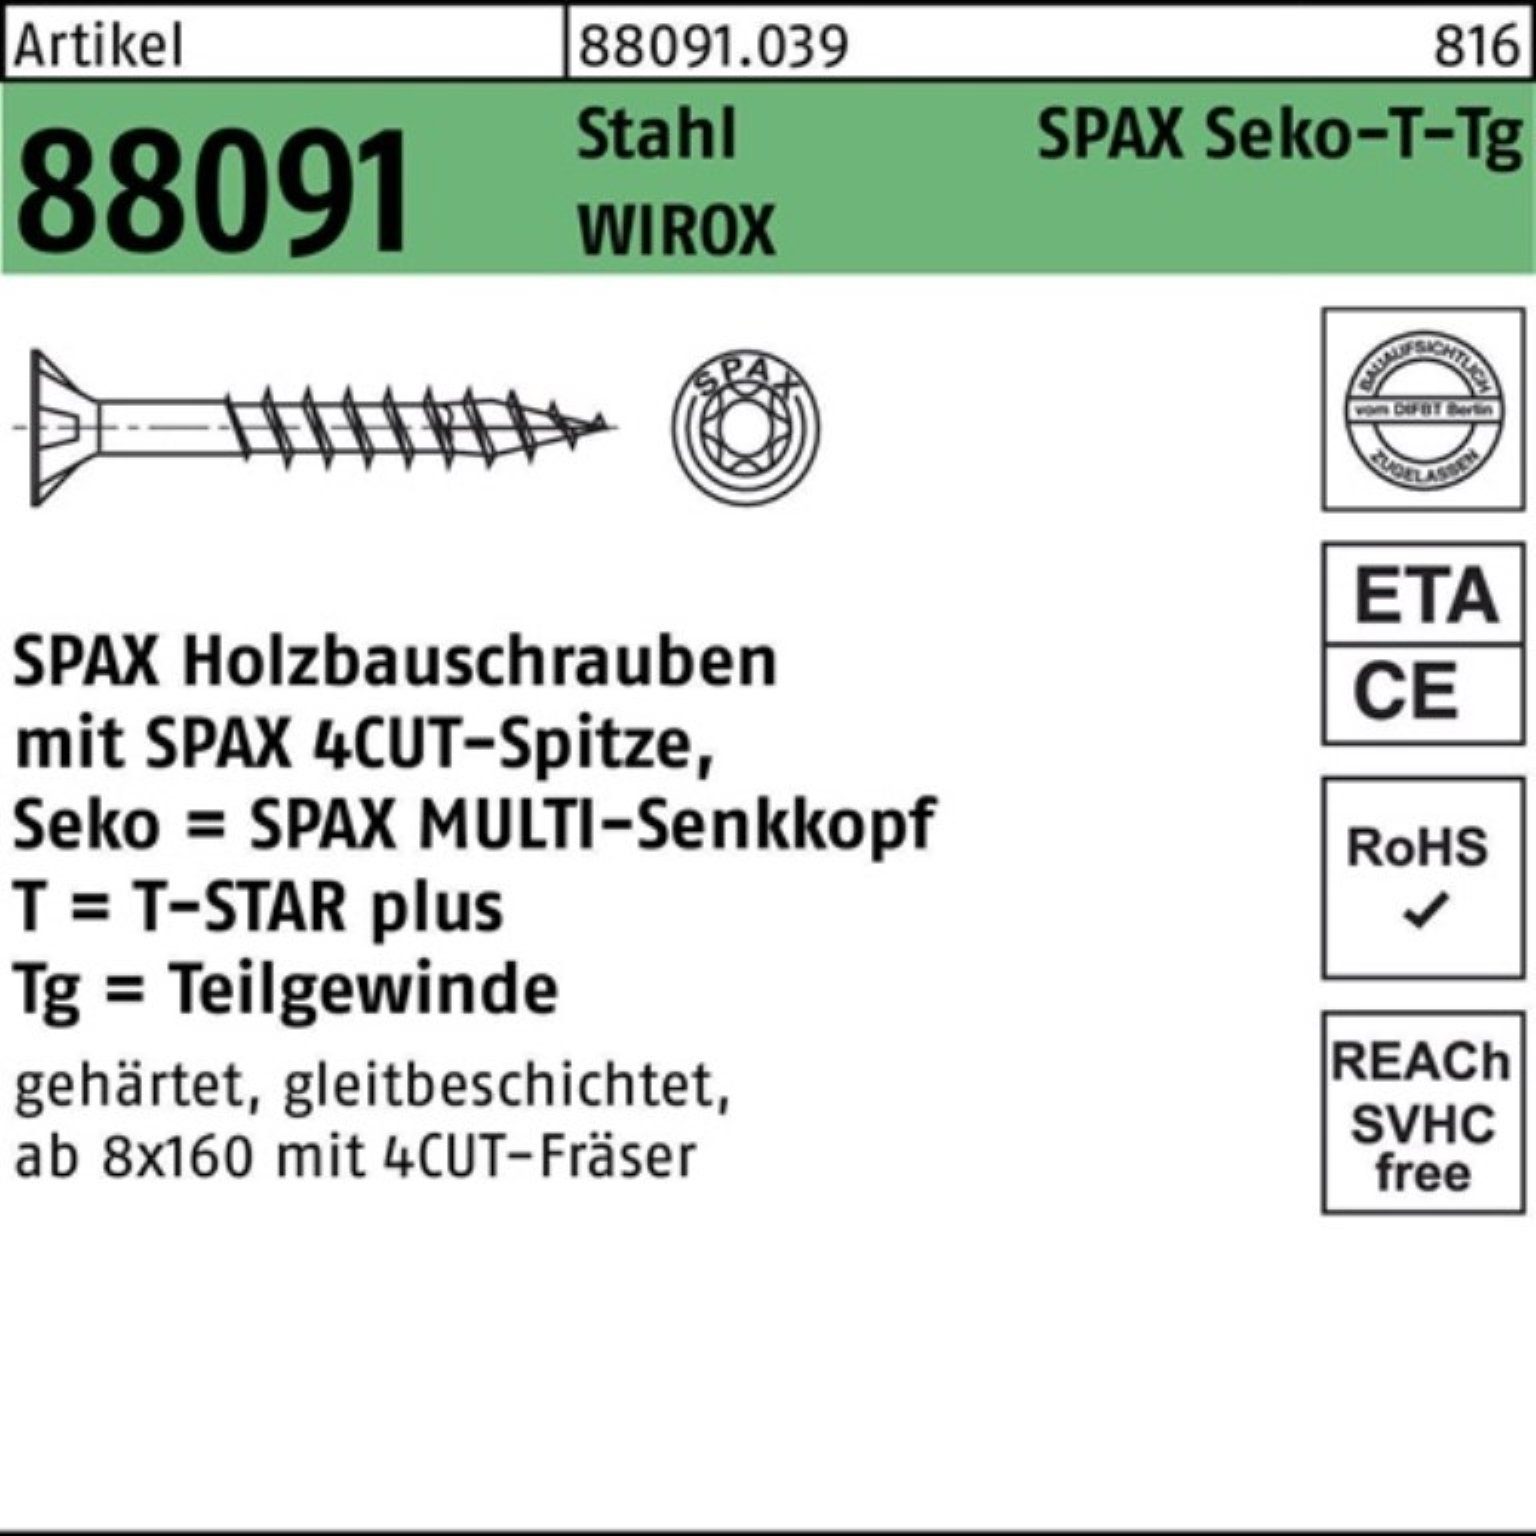 SPAX Schraube SEKO/T-STAR 100er Pack Stahl TG Schraube WIROX 88091 400/80-T50 R 10x